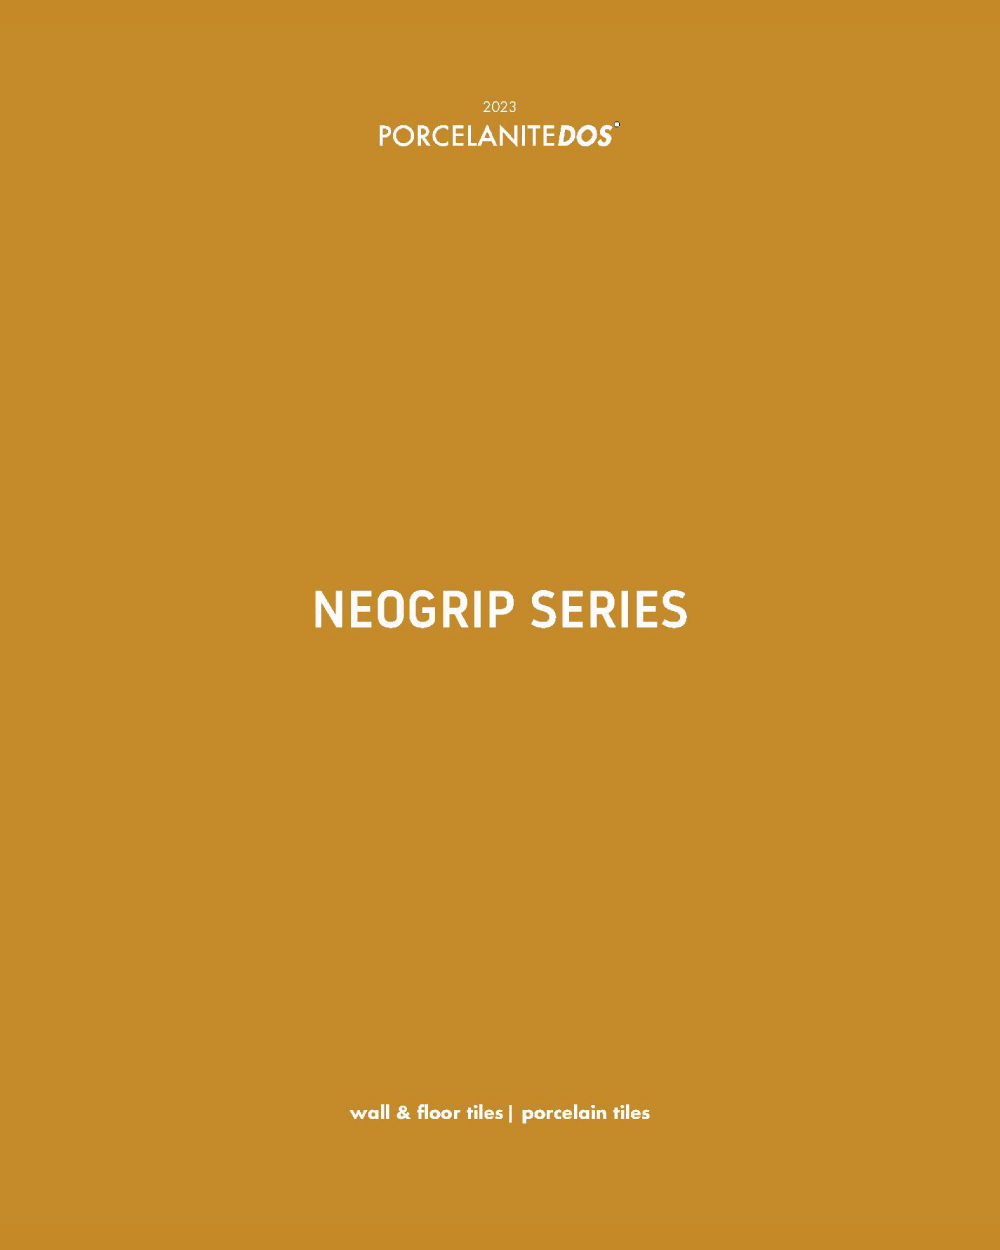 Neogrip Catalogo 2023 rs - Catálogos